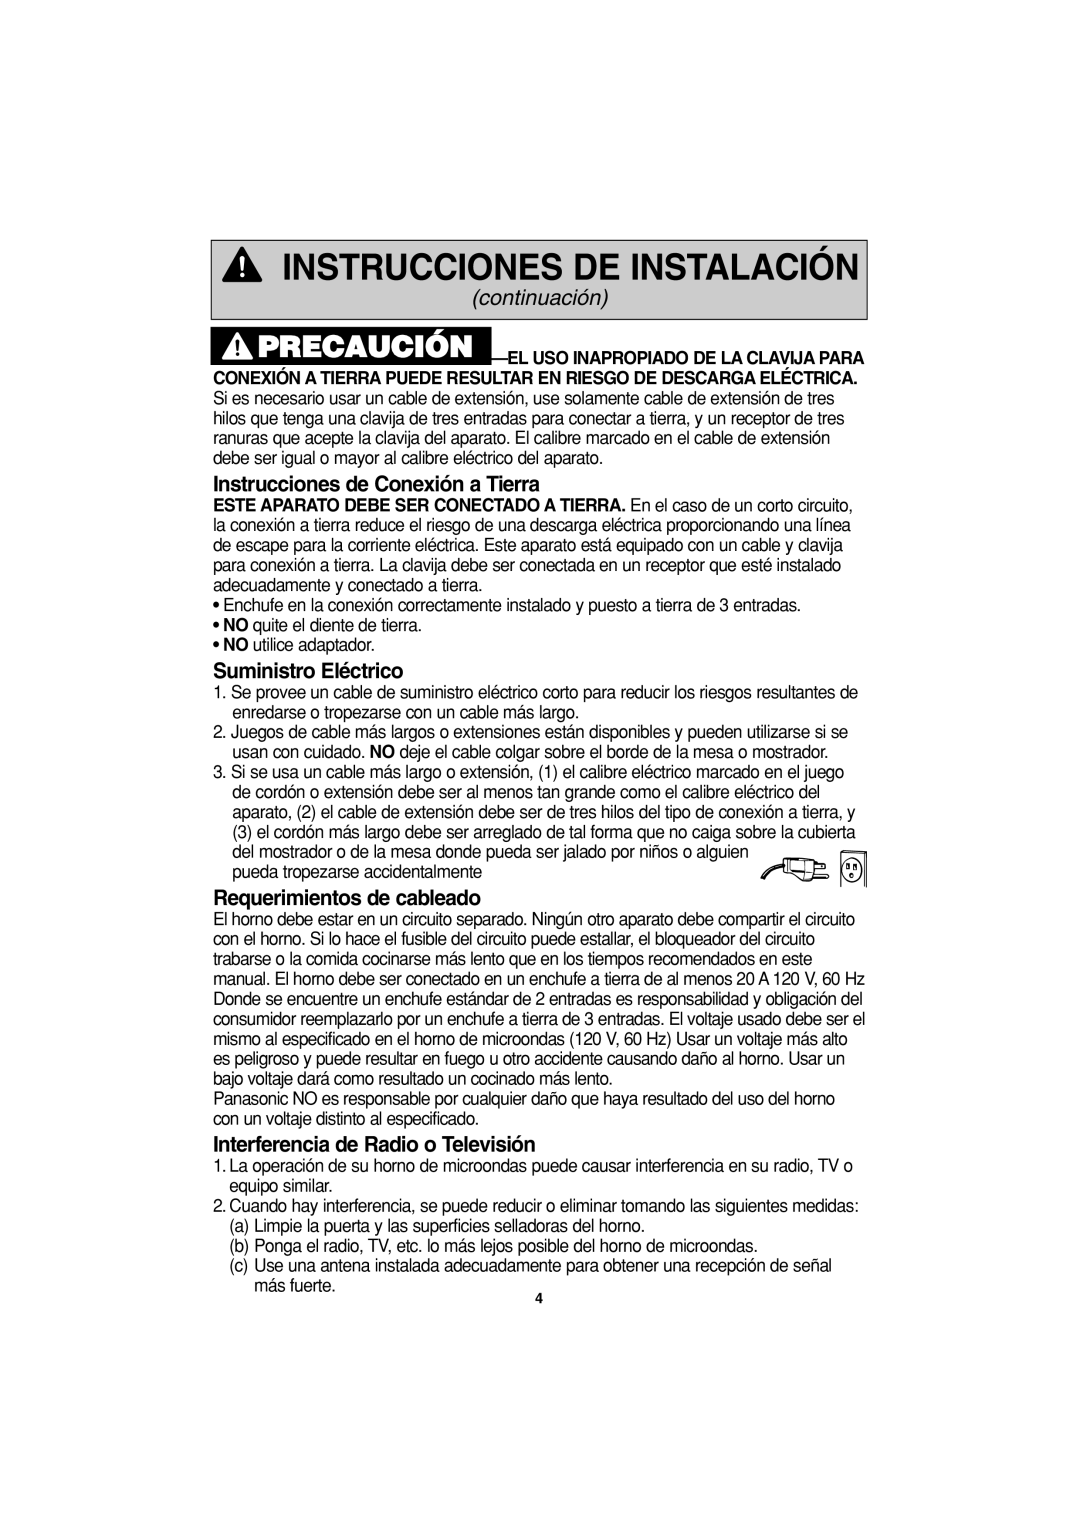 Panasonic NN-S423 Instrucciones de Conexión a Tierra, Suministro Eléctrico, Requerimientos de cableado, continuación 